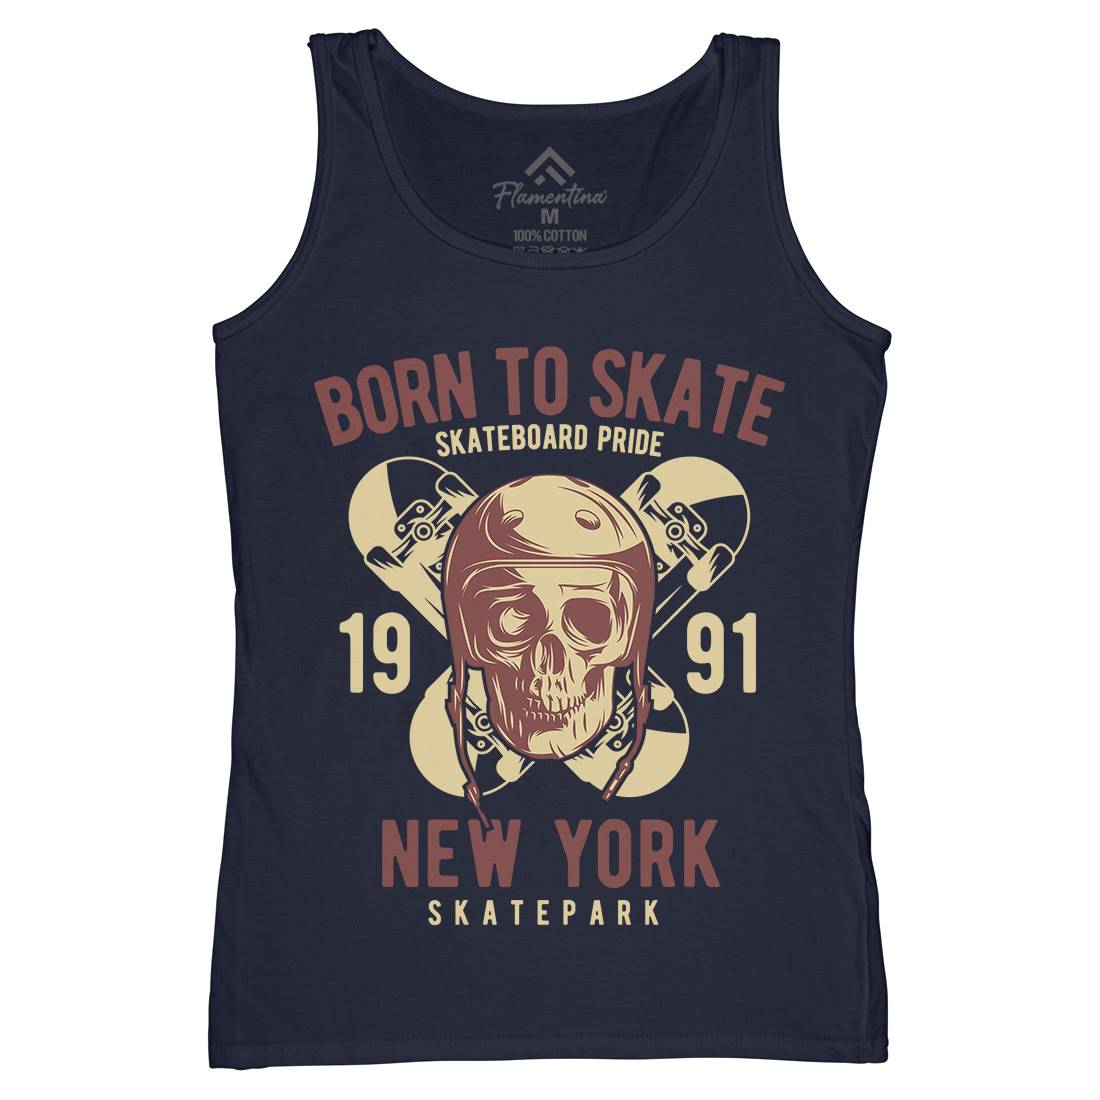 Skater Womens Organic Tank Top Vest Skate B338